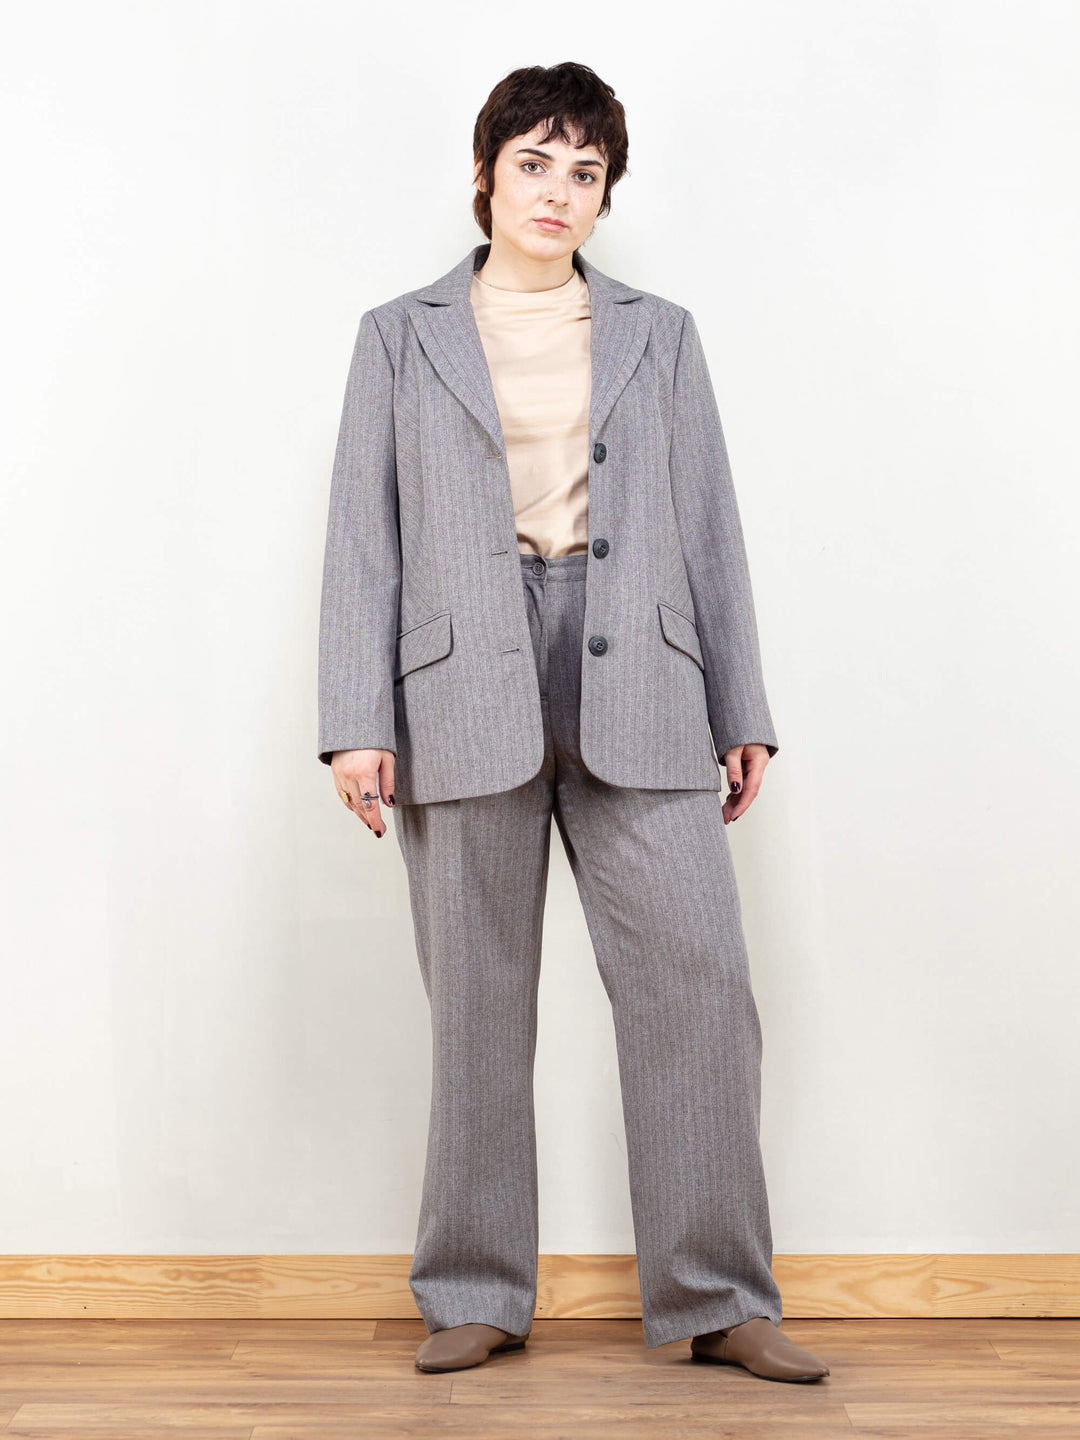 Women Pant Suit vintage 90s gray striped pantsuit two piece business suit straight leg pants and blazer set vintage clothing size medium